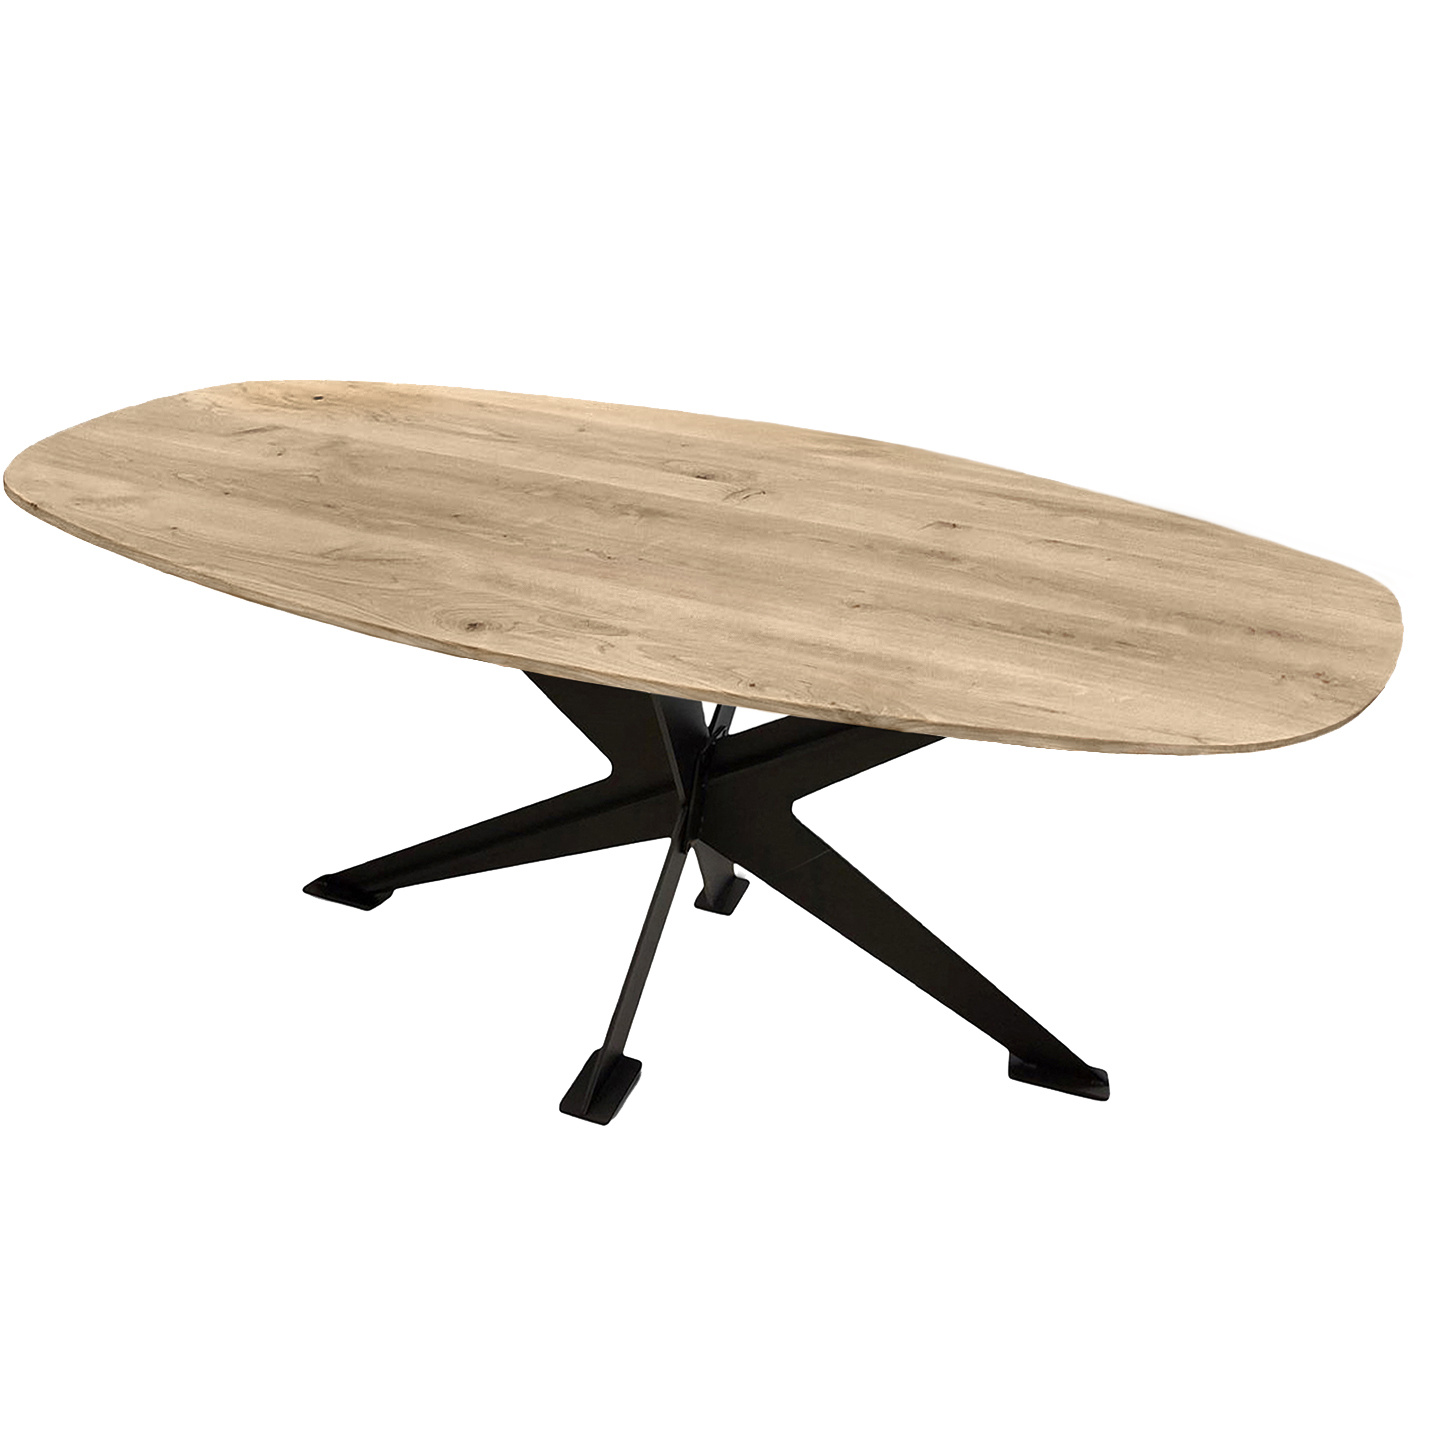  Tischplatte Wildeiche dänisch-oval - 2,5 cm dick (1-Schicht) - XXL Lamellen (14-20 cm breit) - Asteiche (rustikal) - Bootsform - verleimt & künstlich getrocknet (HF 8-12%) - verschiedene Größen